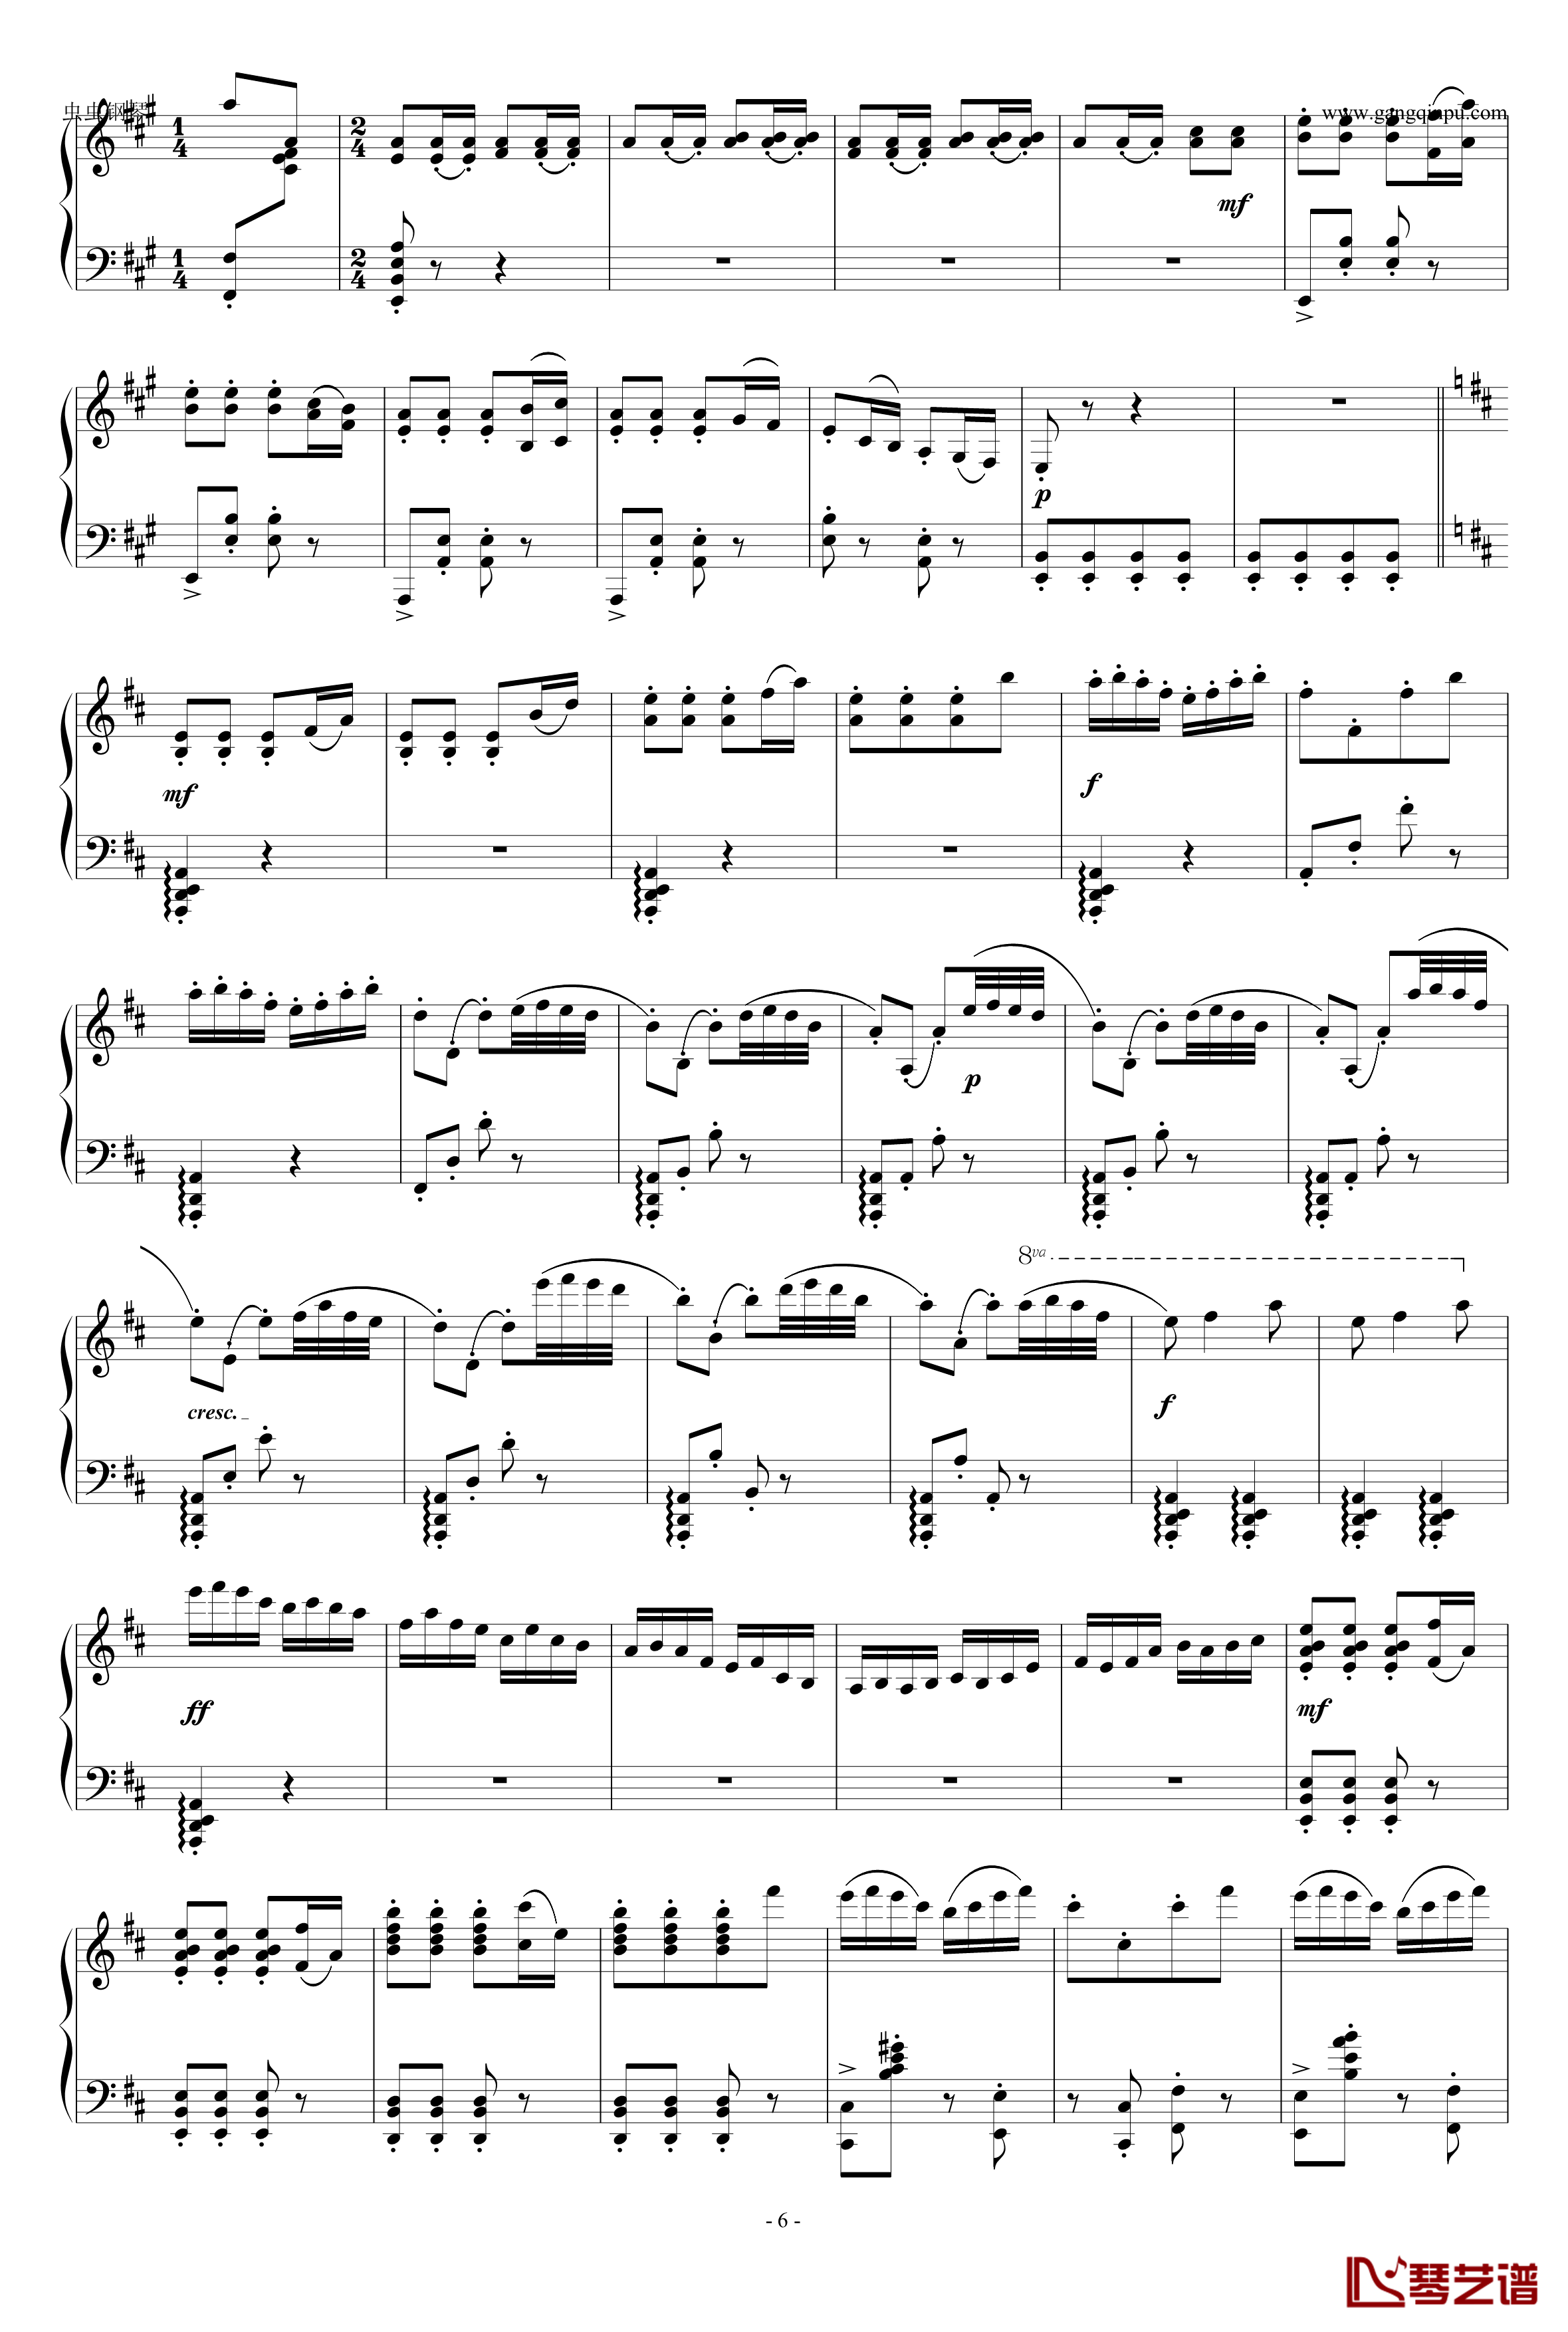 梁山伯与祝英台钢琴谱-完整版-钢琴独奏精品付视频参照-苗波6